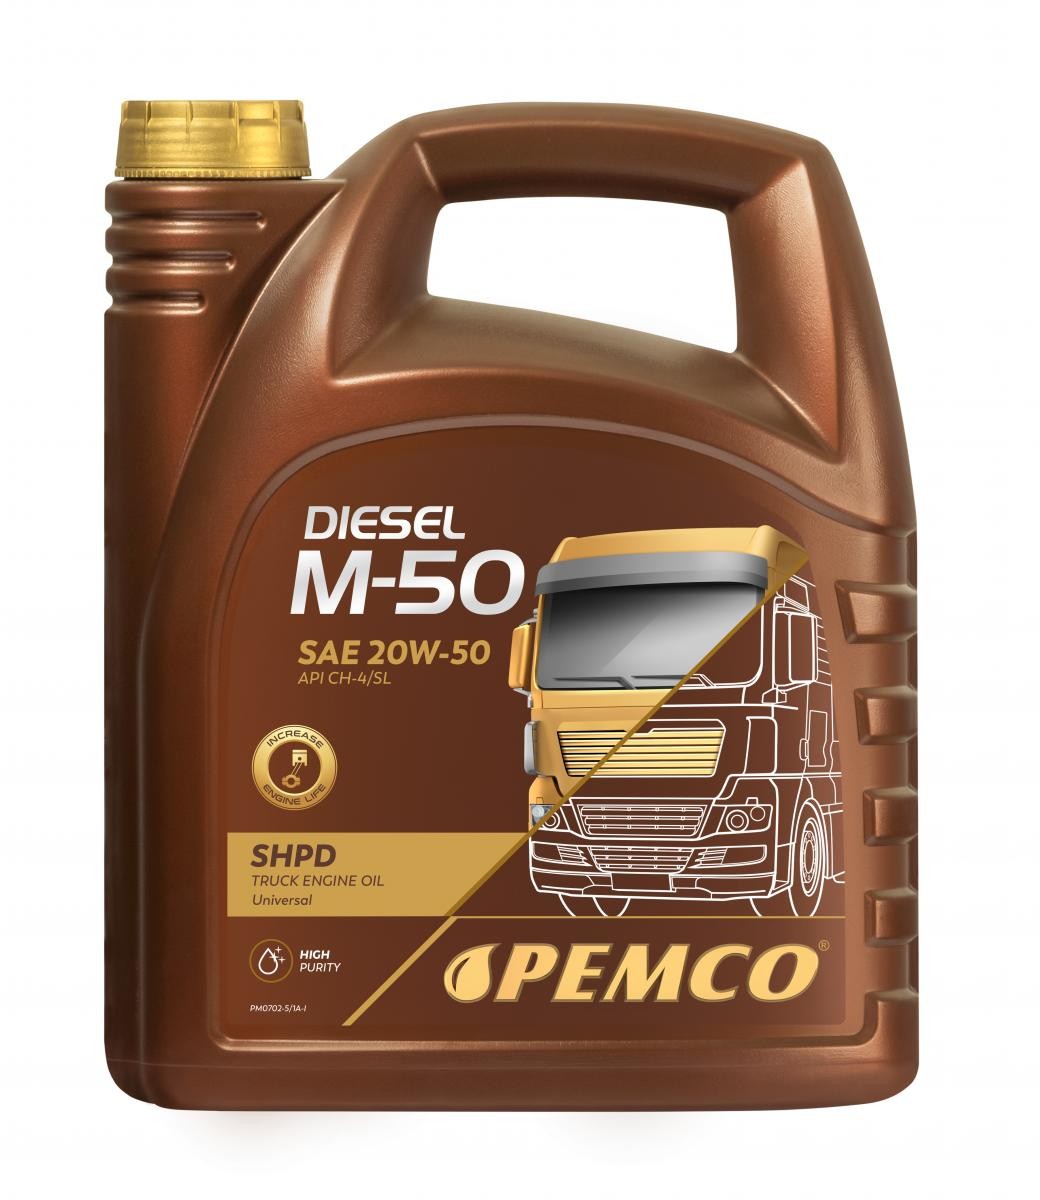 Motor oil ACEA E3 PEMCO - PM0702-5 Truck SHPD, DIESEL M-50 SHPD